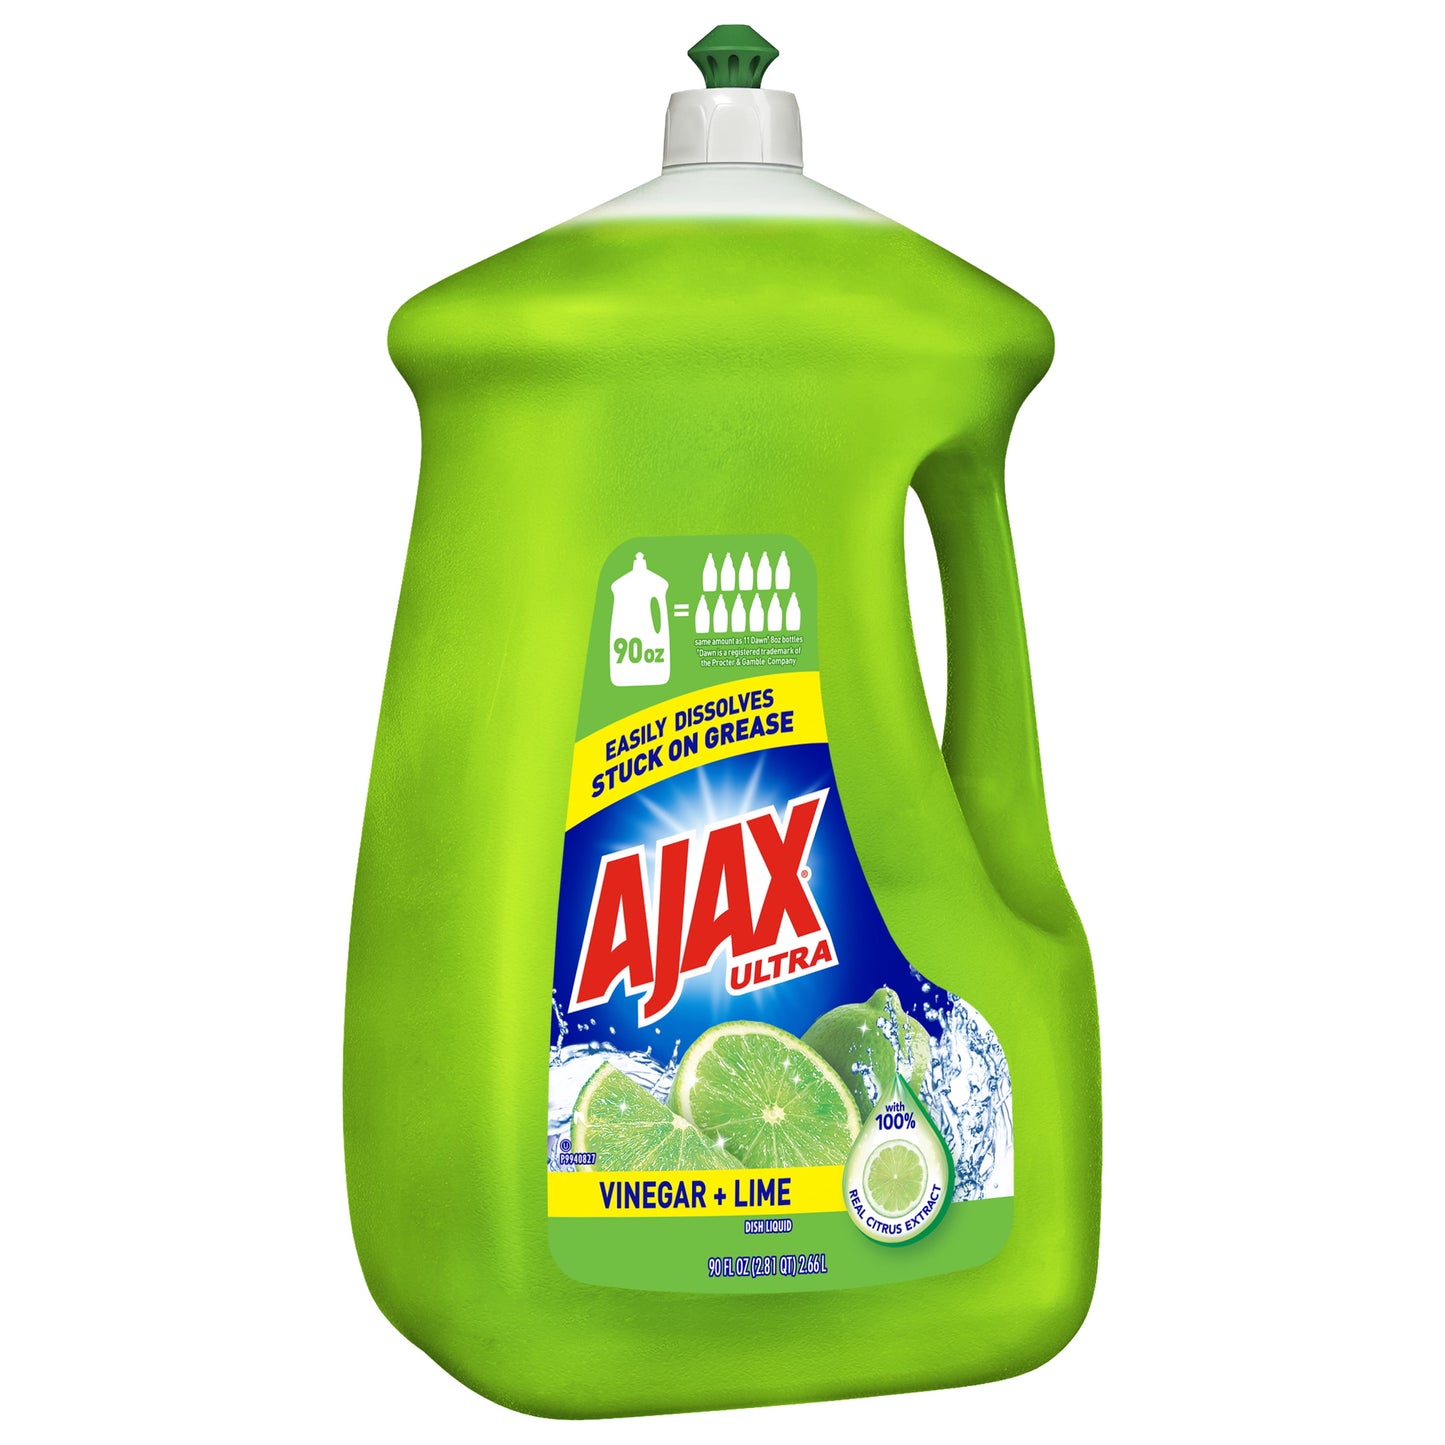 AJAX Liquid Dish Soap, Vinegar and Lime, 90 Fluid Ounce